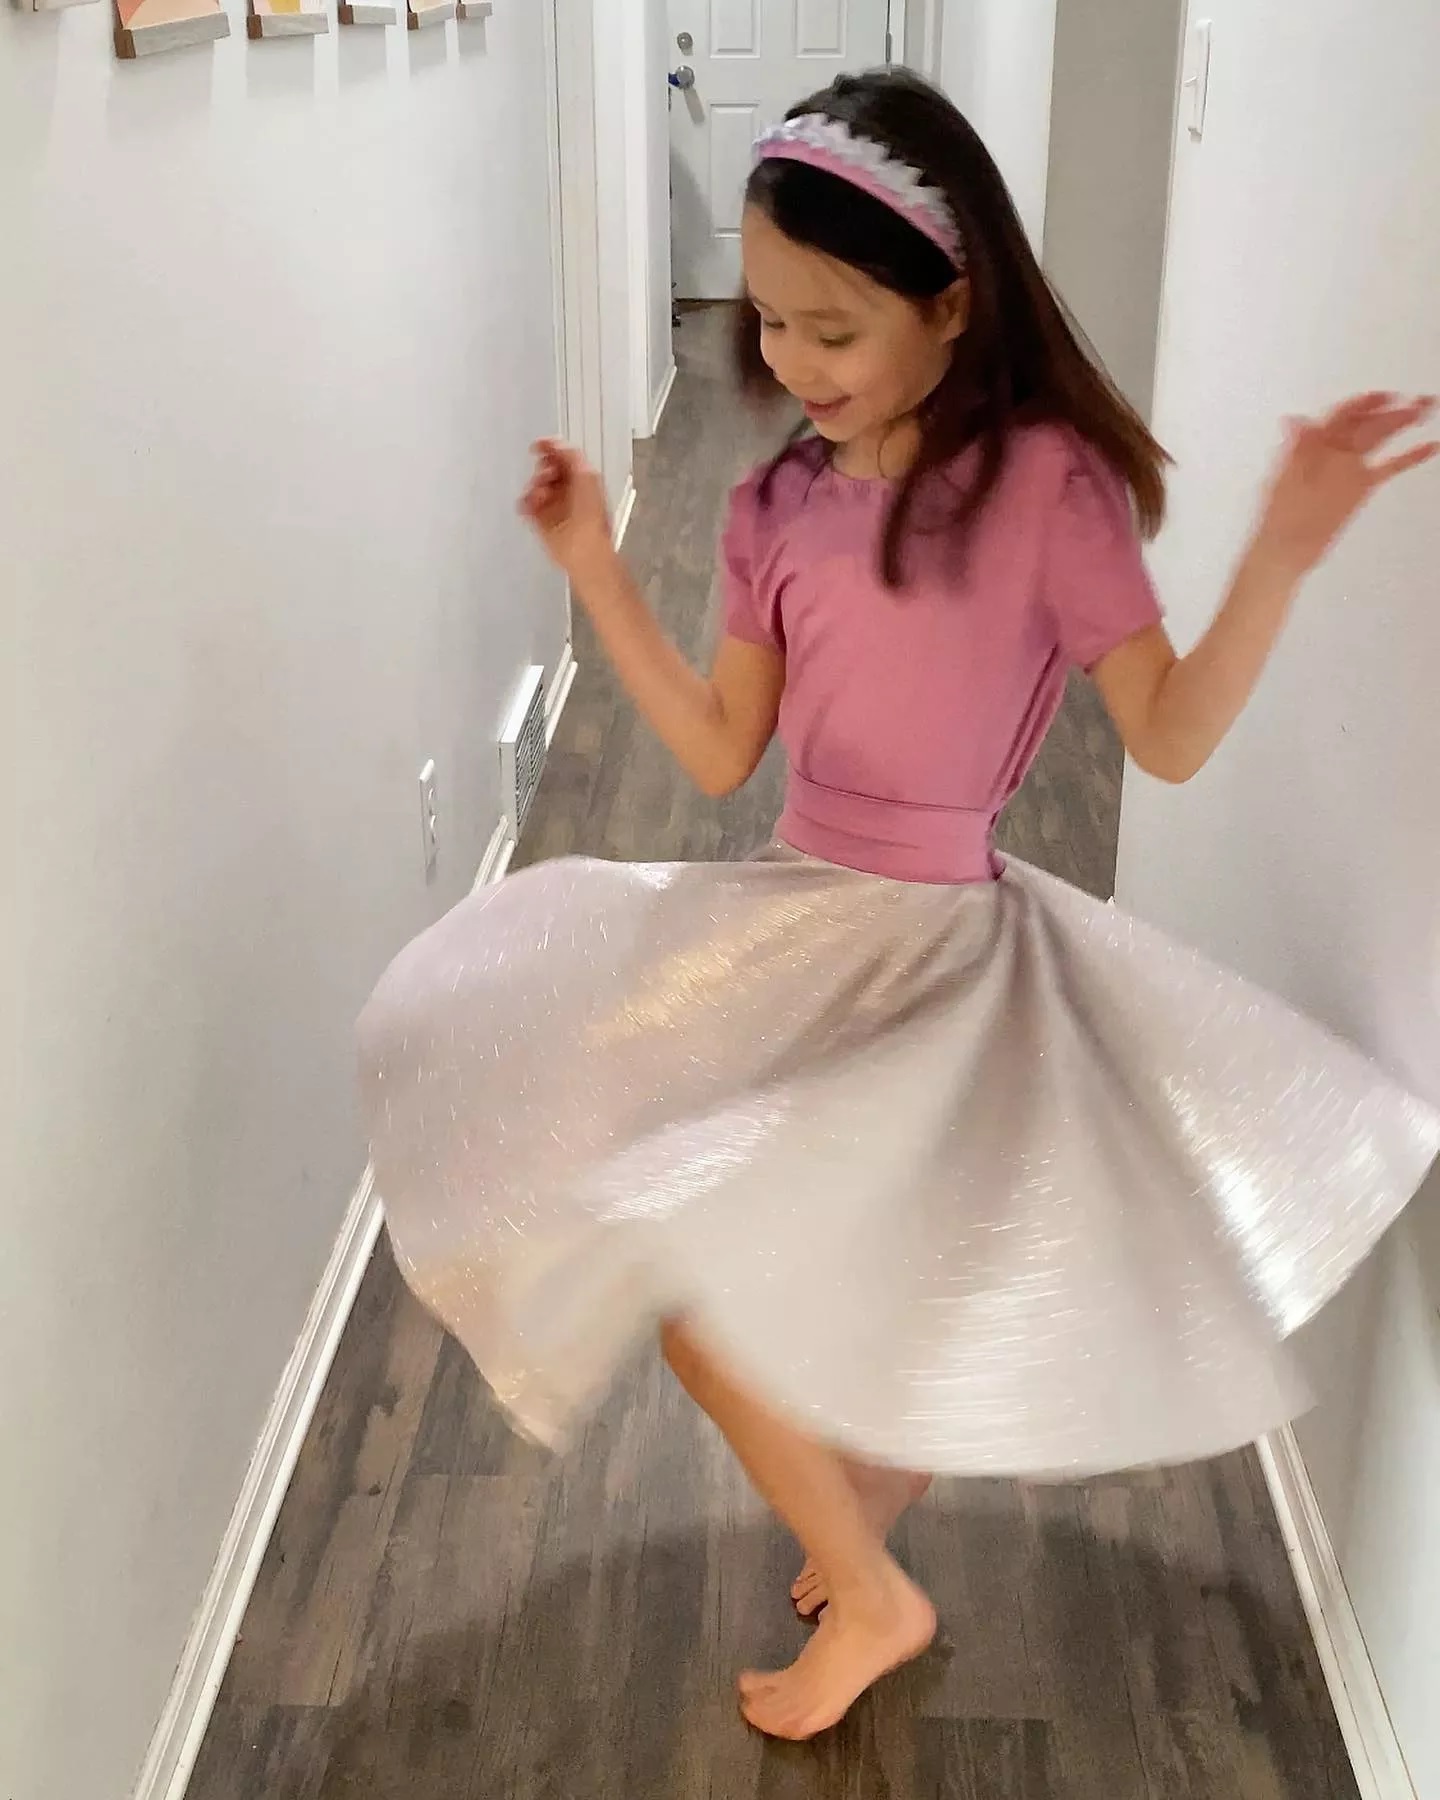 revistapazes.com - Menina de apenas 9 anos que costura suas próprias roupas fica famosa no mundo da moda